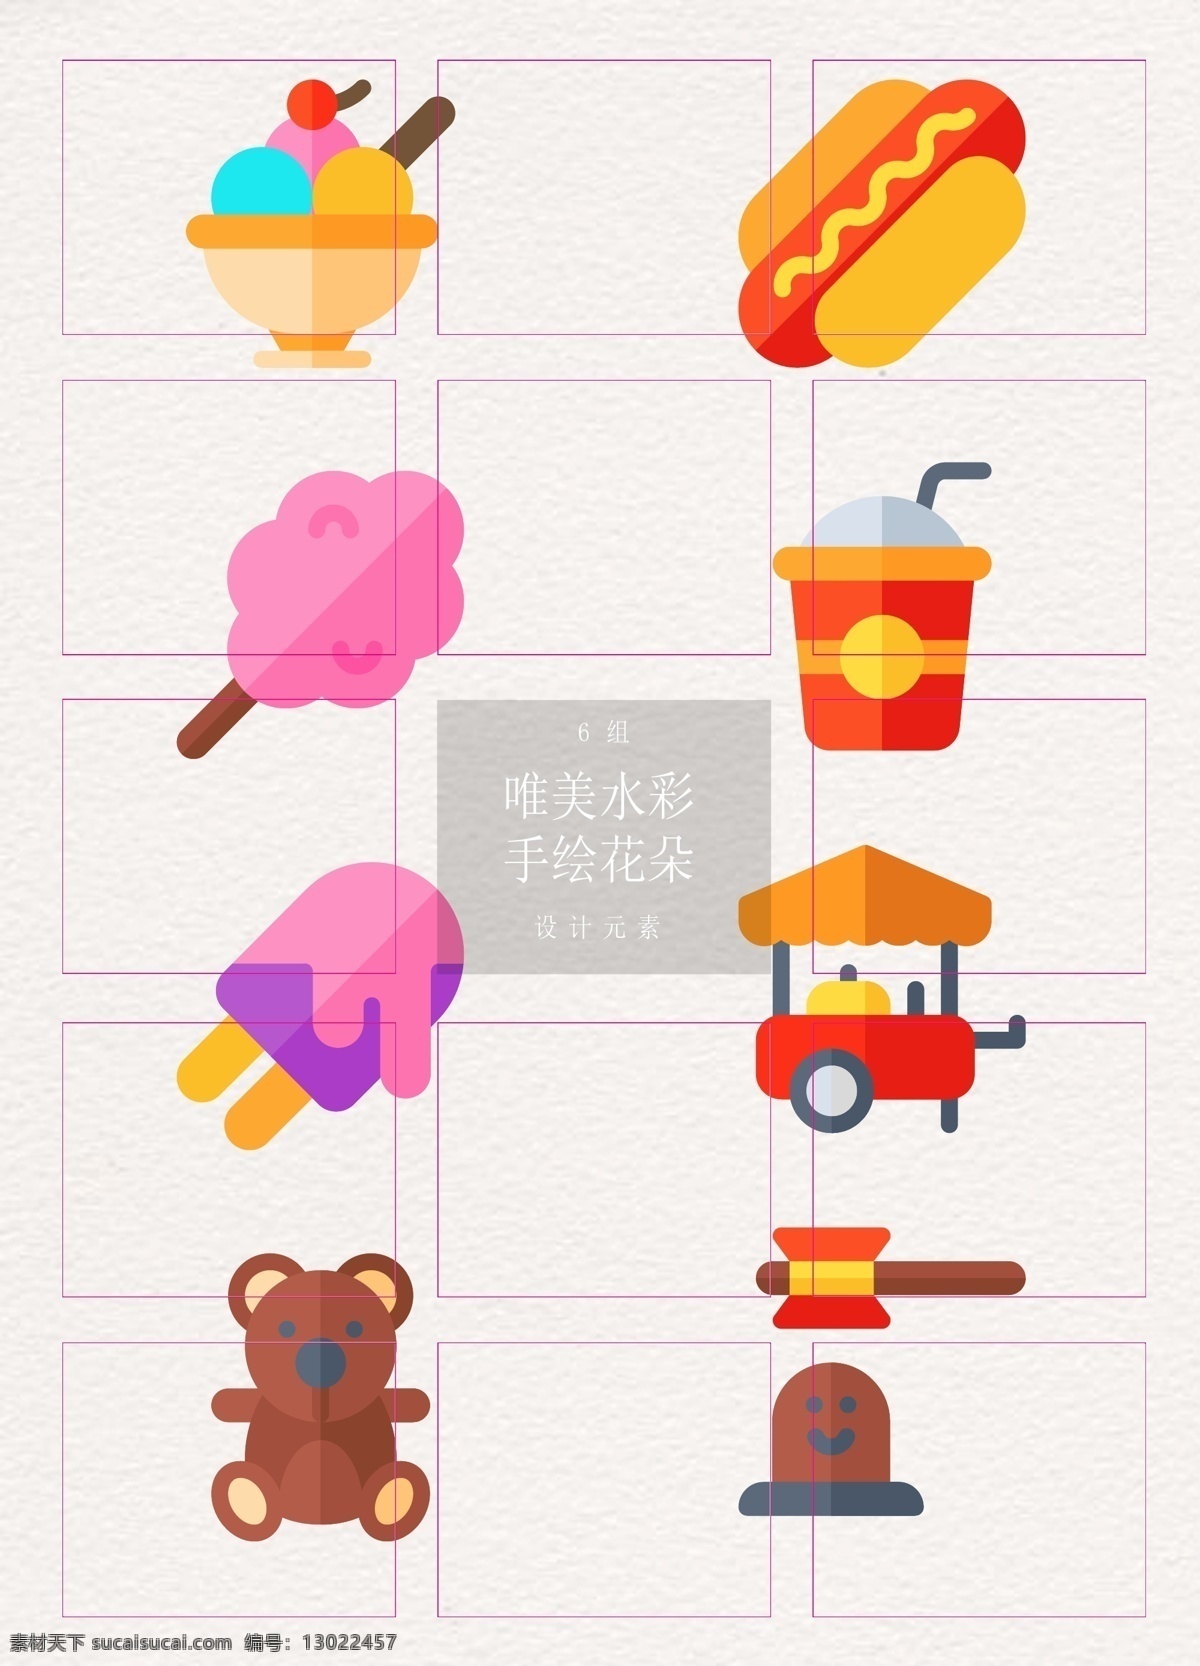 彩色 组 食物 游戏 元素 矢量图 图标 冰淇淋 饮料 卡通 儿童 热狗 棉花糖 餐车 玩具小熊 打地鼠